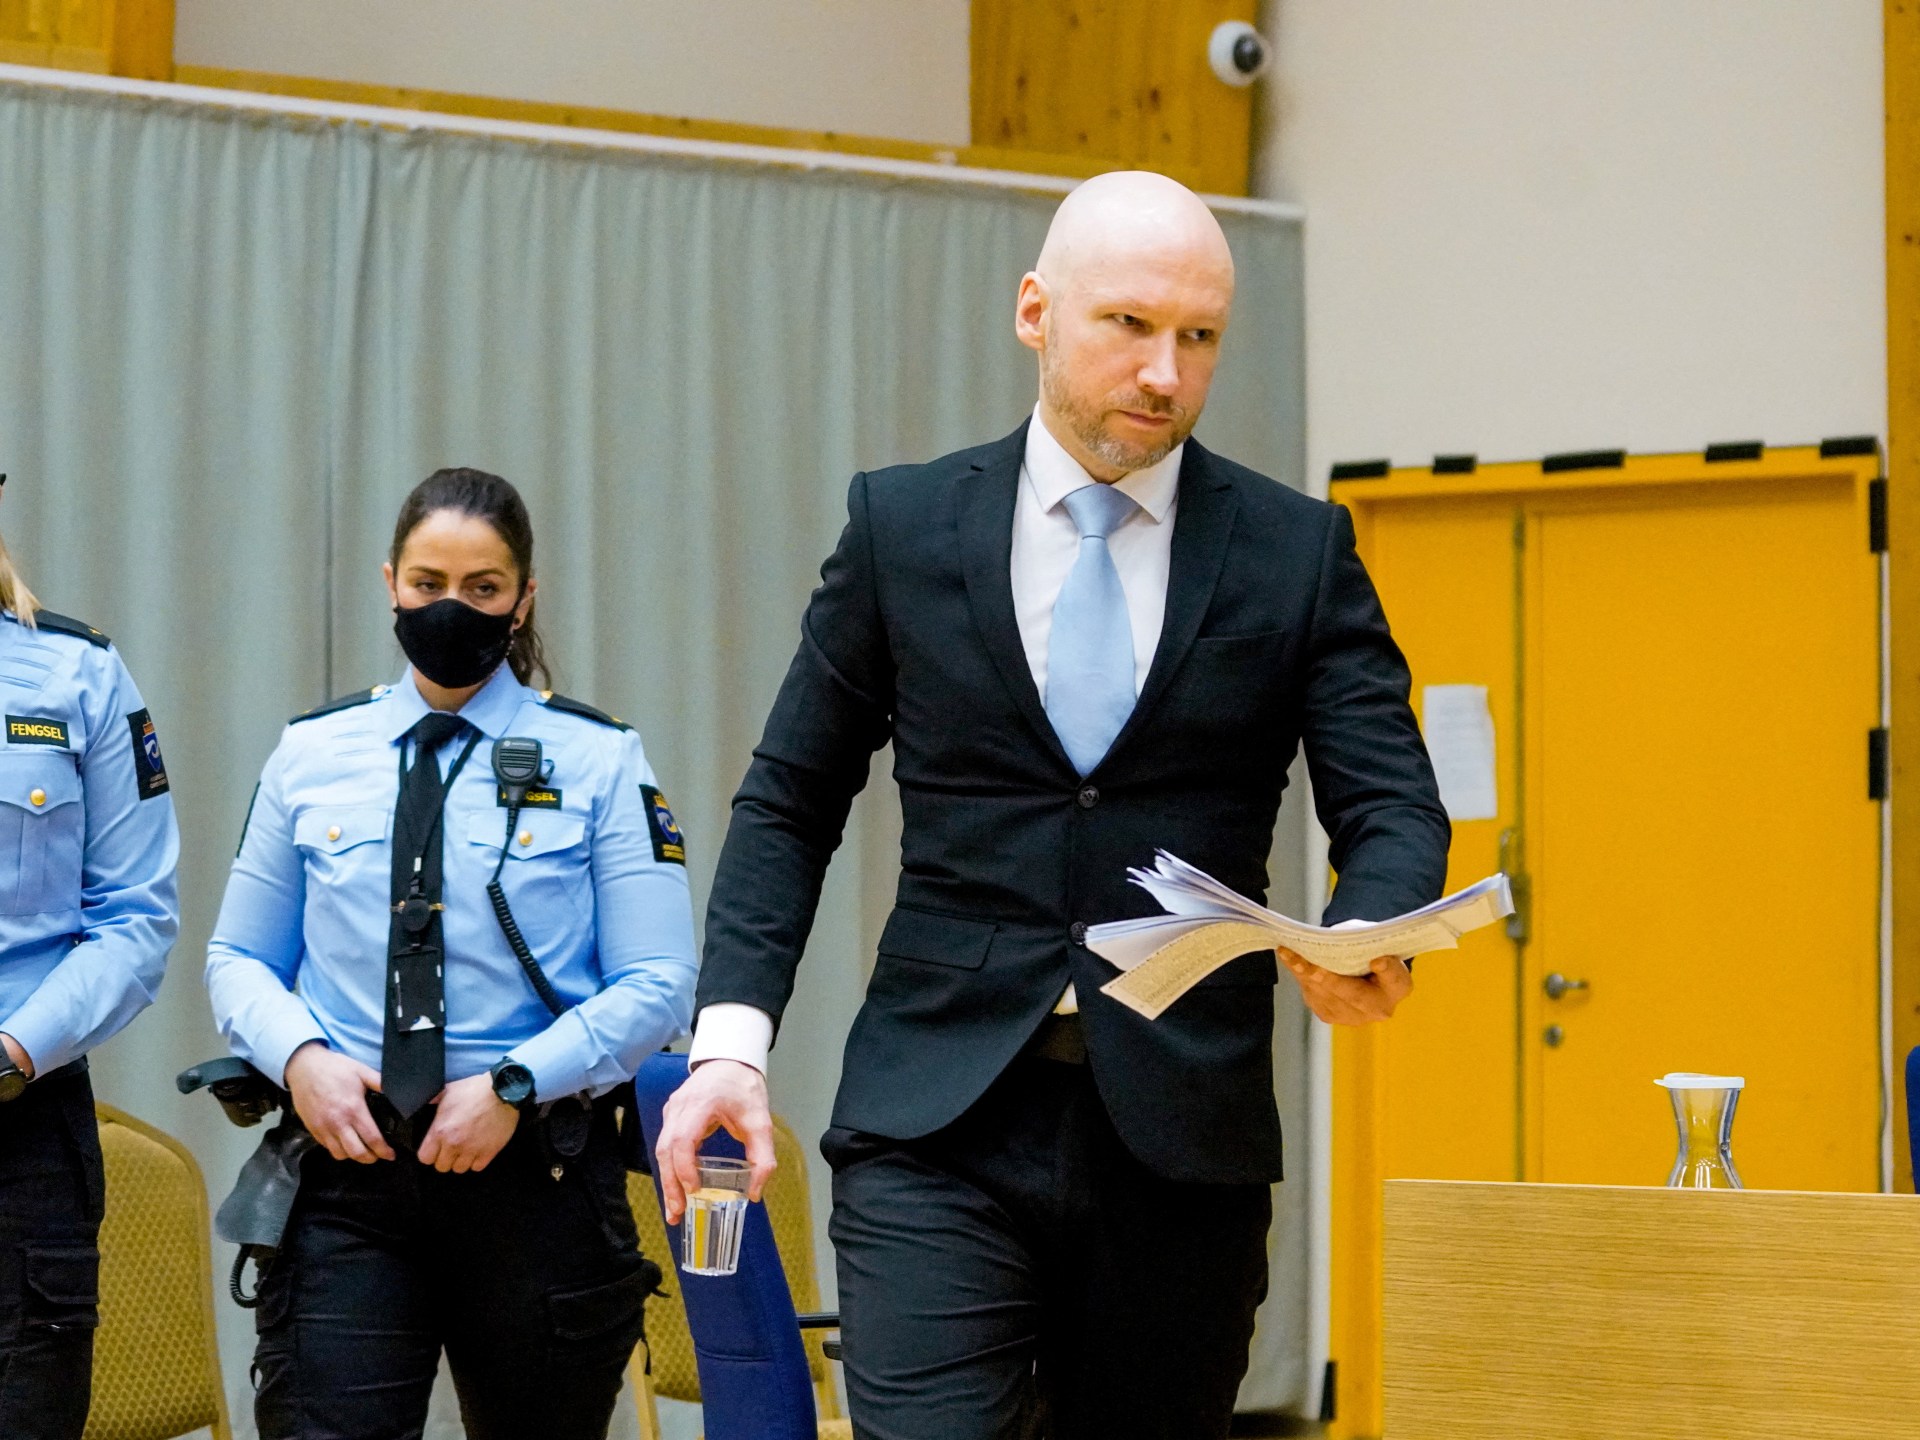 Norsk domstol avslår massedrapsmannen Breiviks prøveløslatelse |  Nyheter